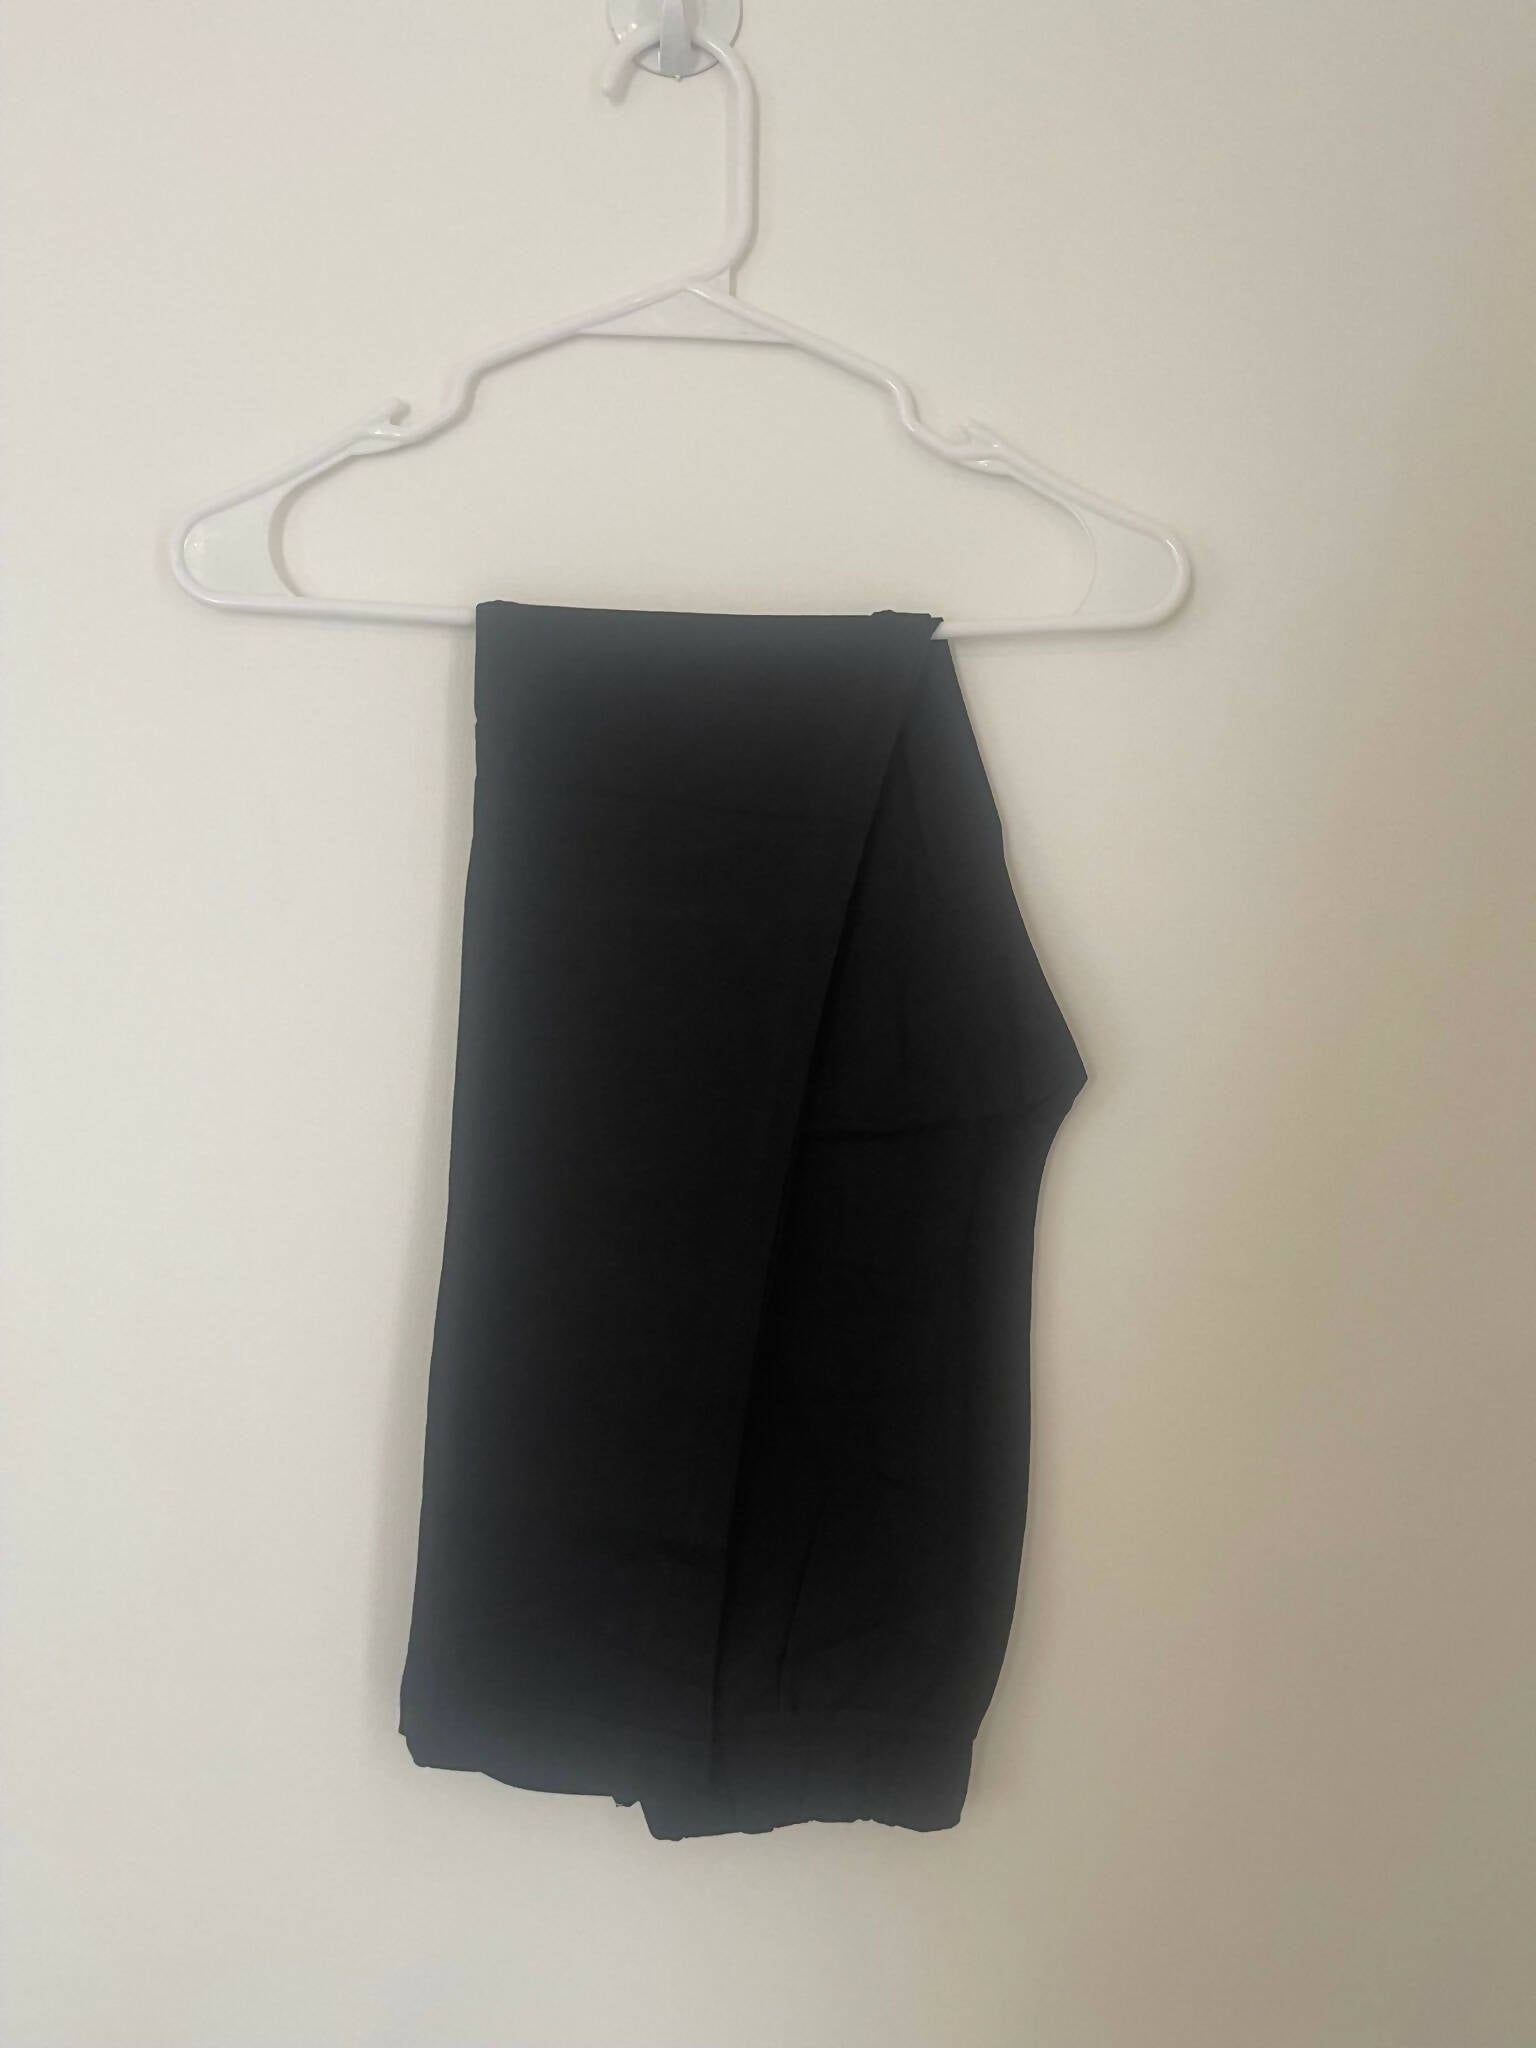 Zenith | Black PJ Set (Size: small, 8/10) | Women Loungewear & Sleepwear | Brand New